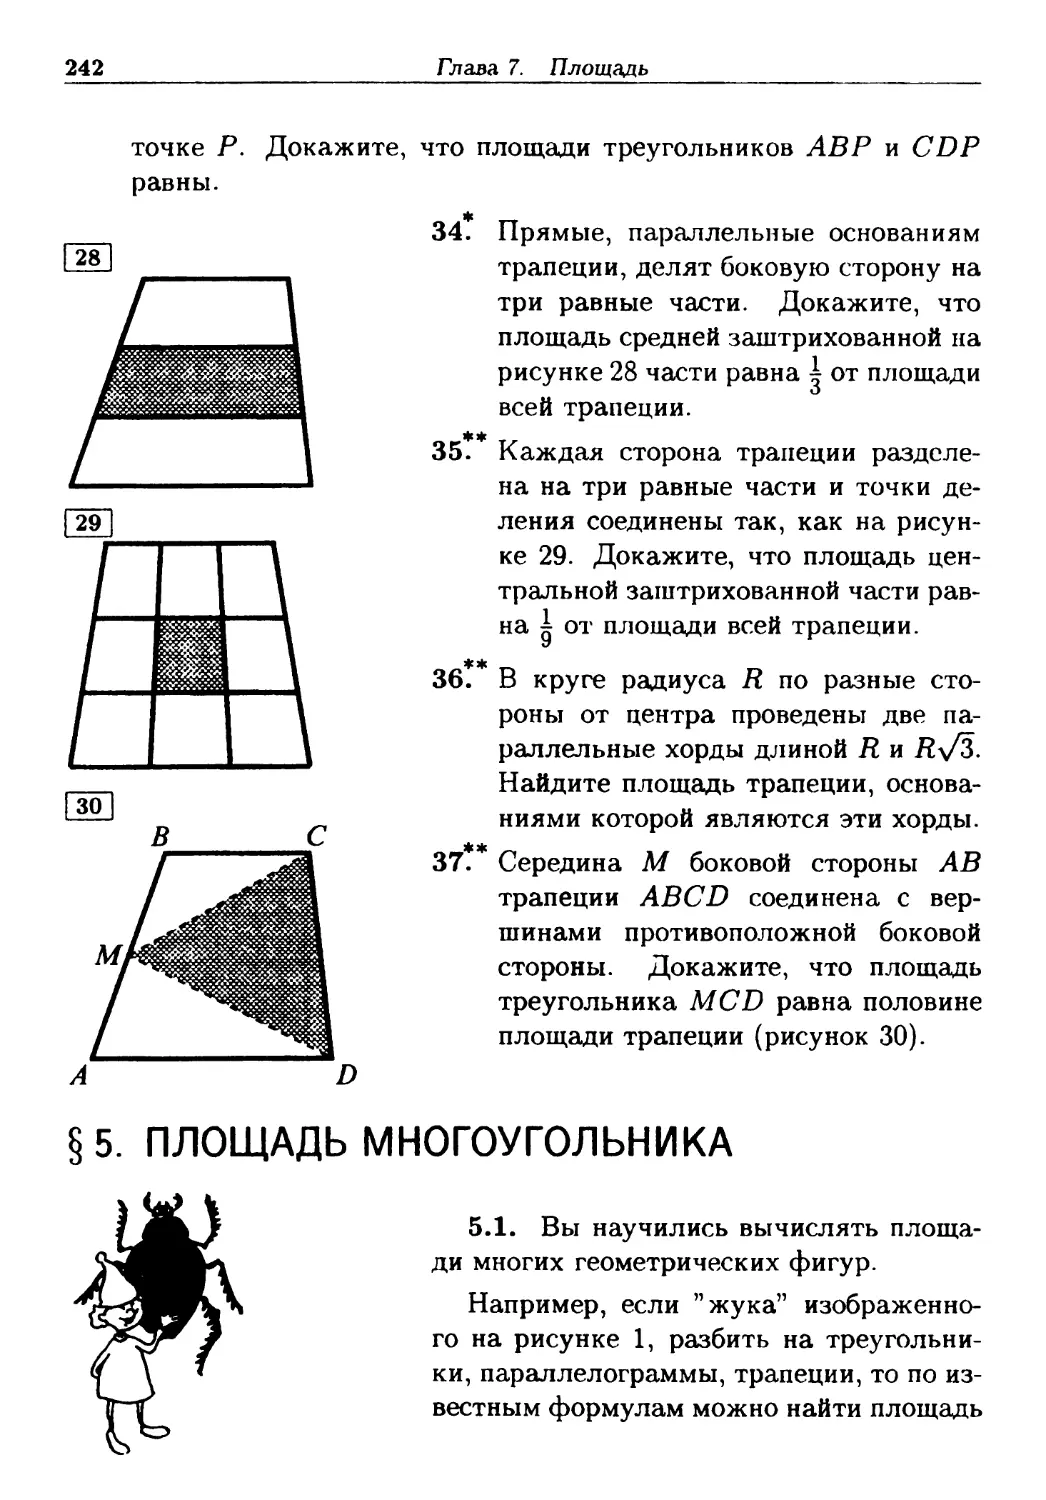 §5. Площадь многоугольника